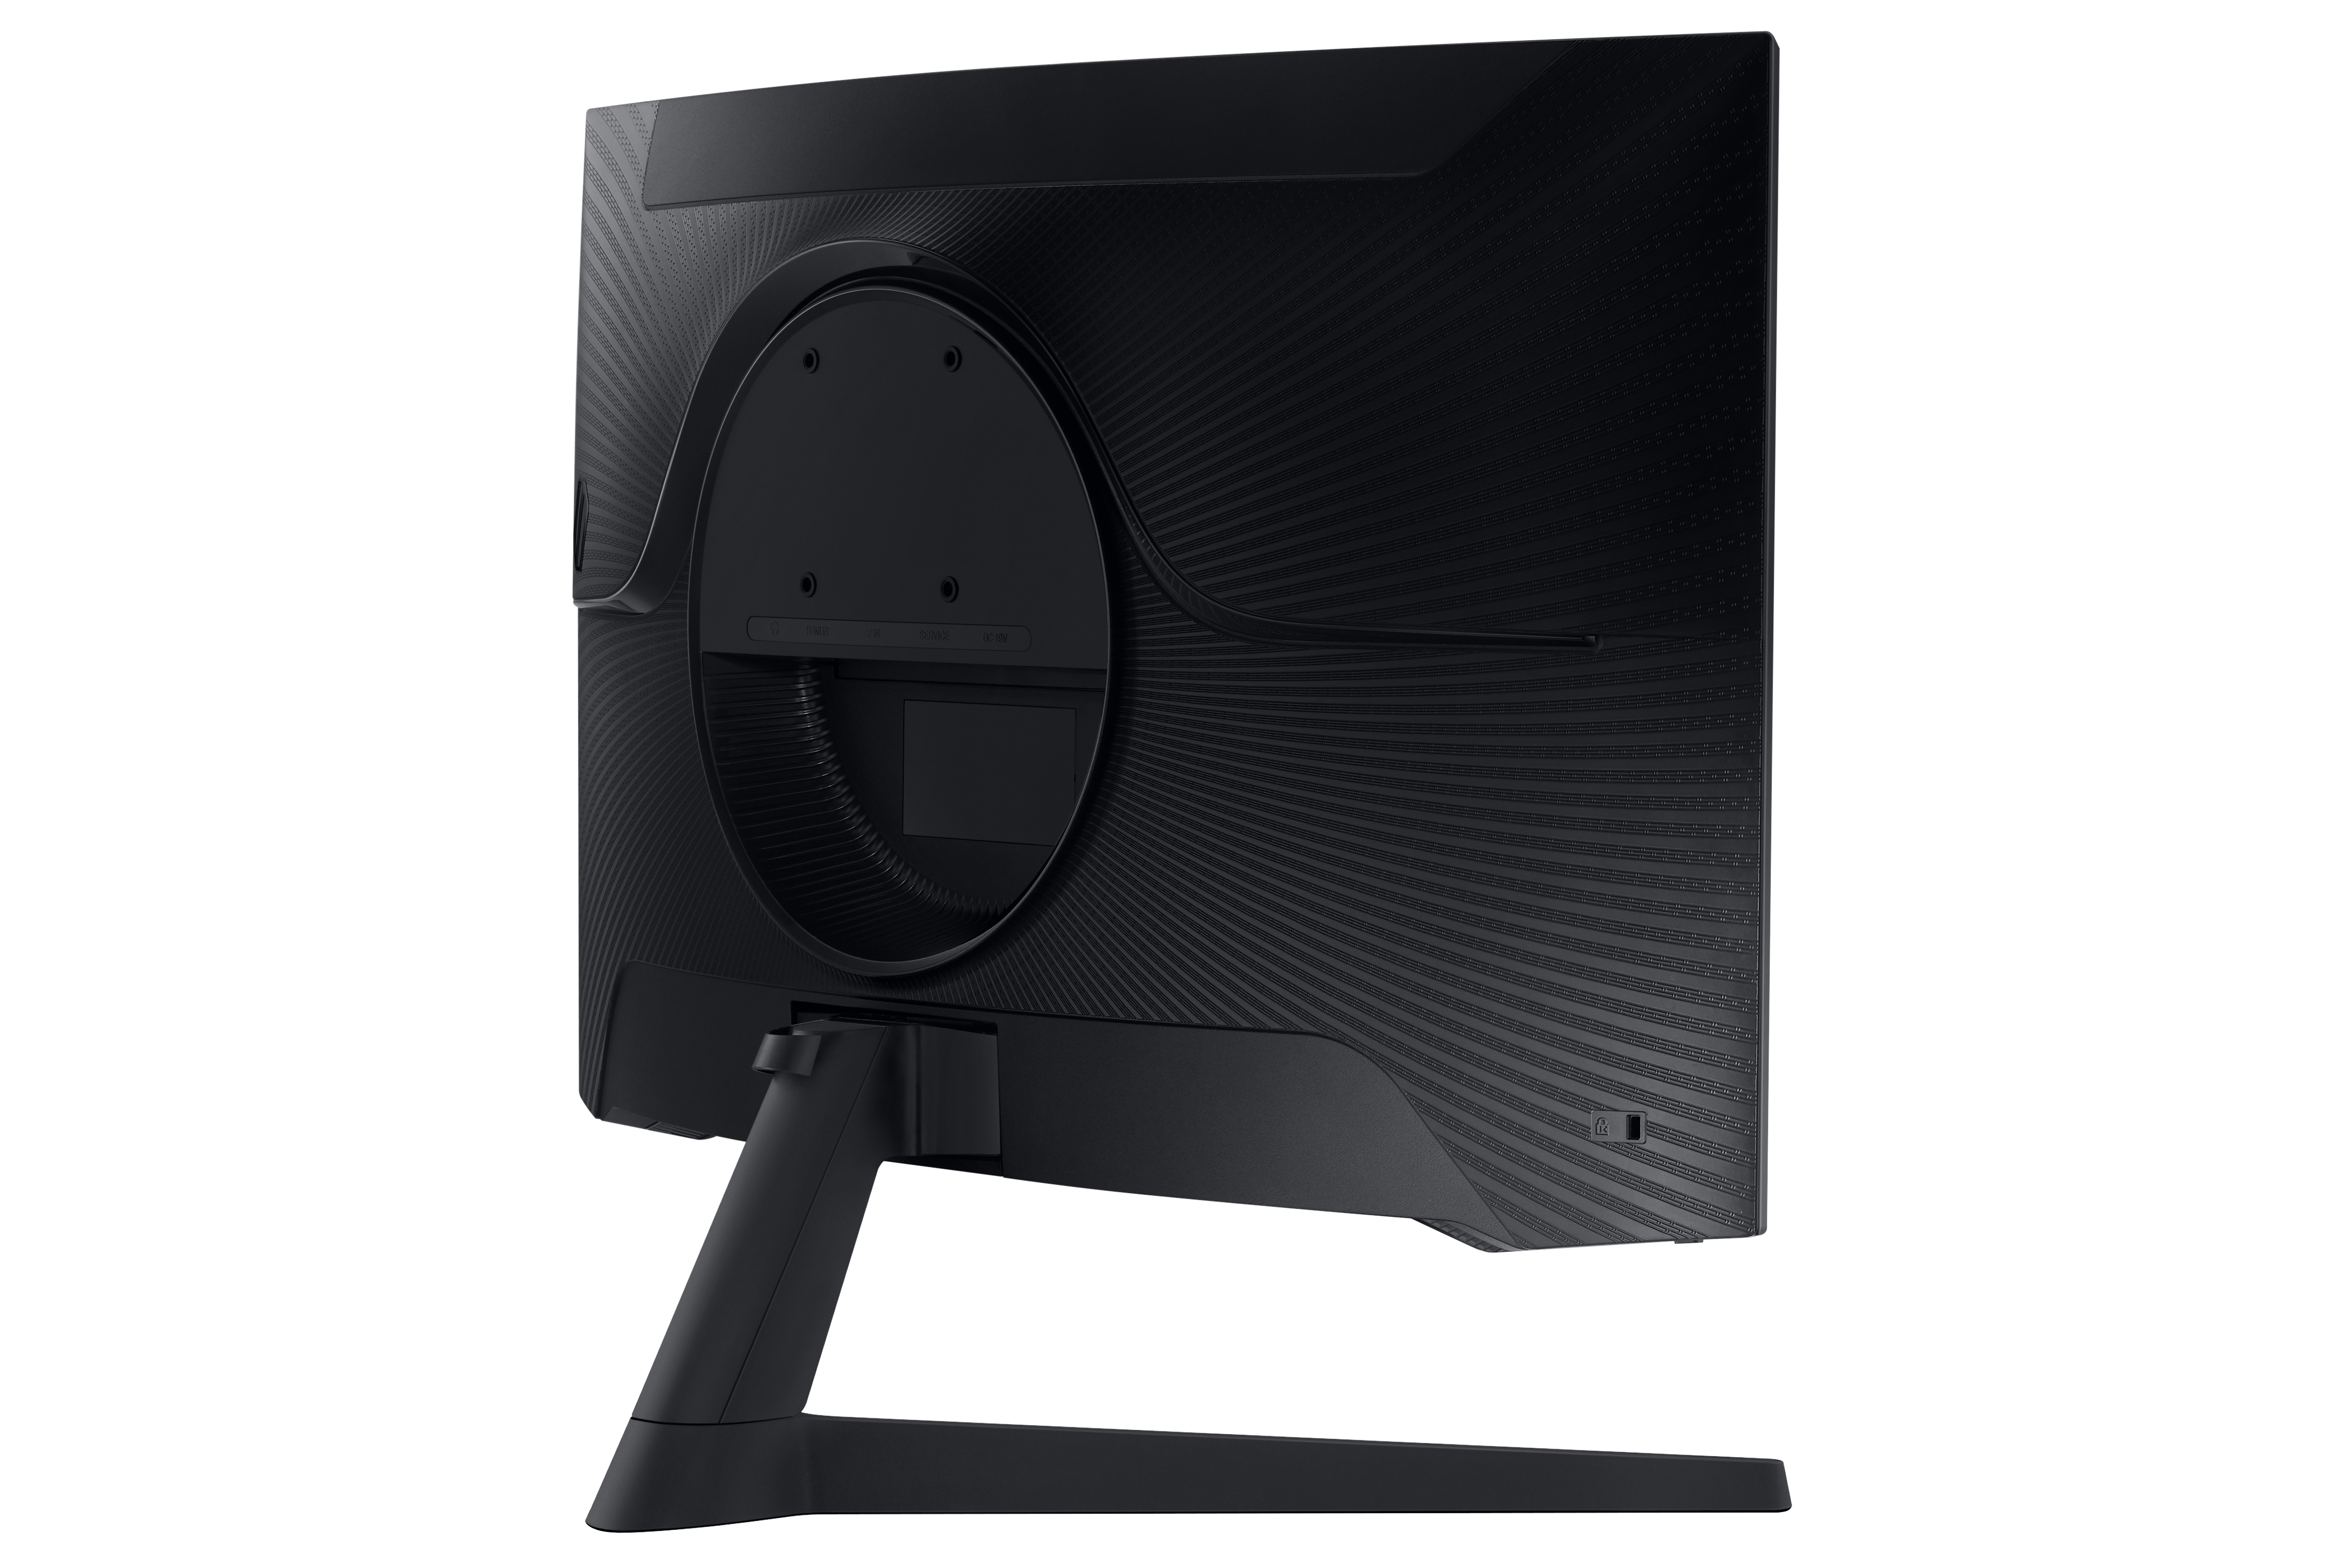 Riesiger Samsung Gaming-Monitor zum winzigen Preis: Odyssey G5 mit